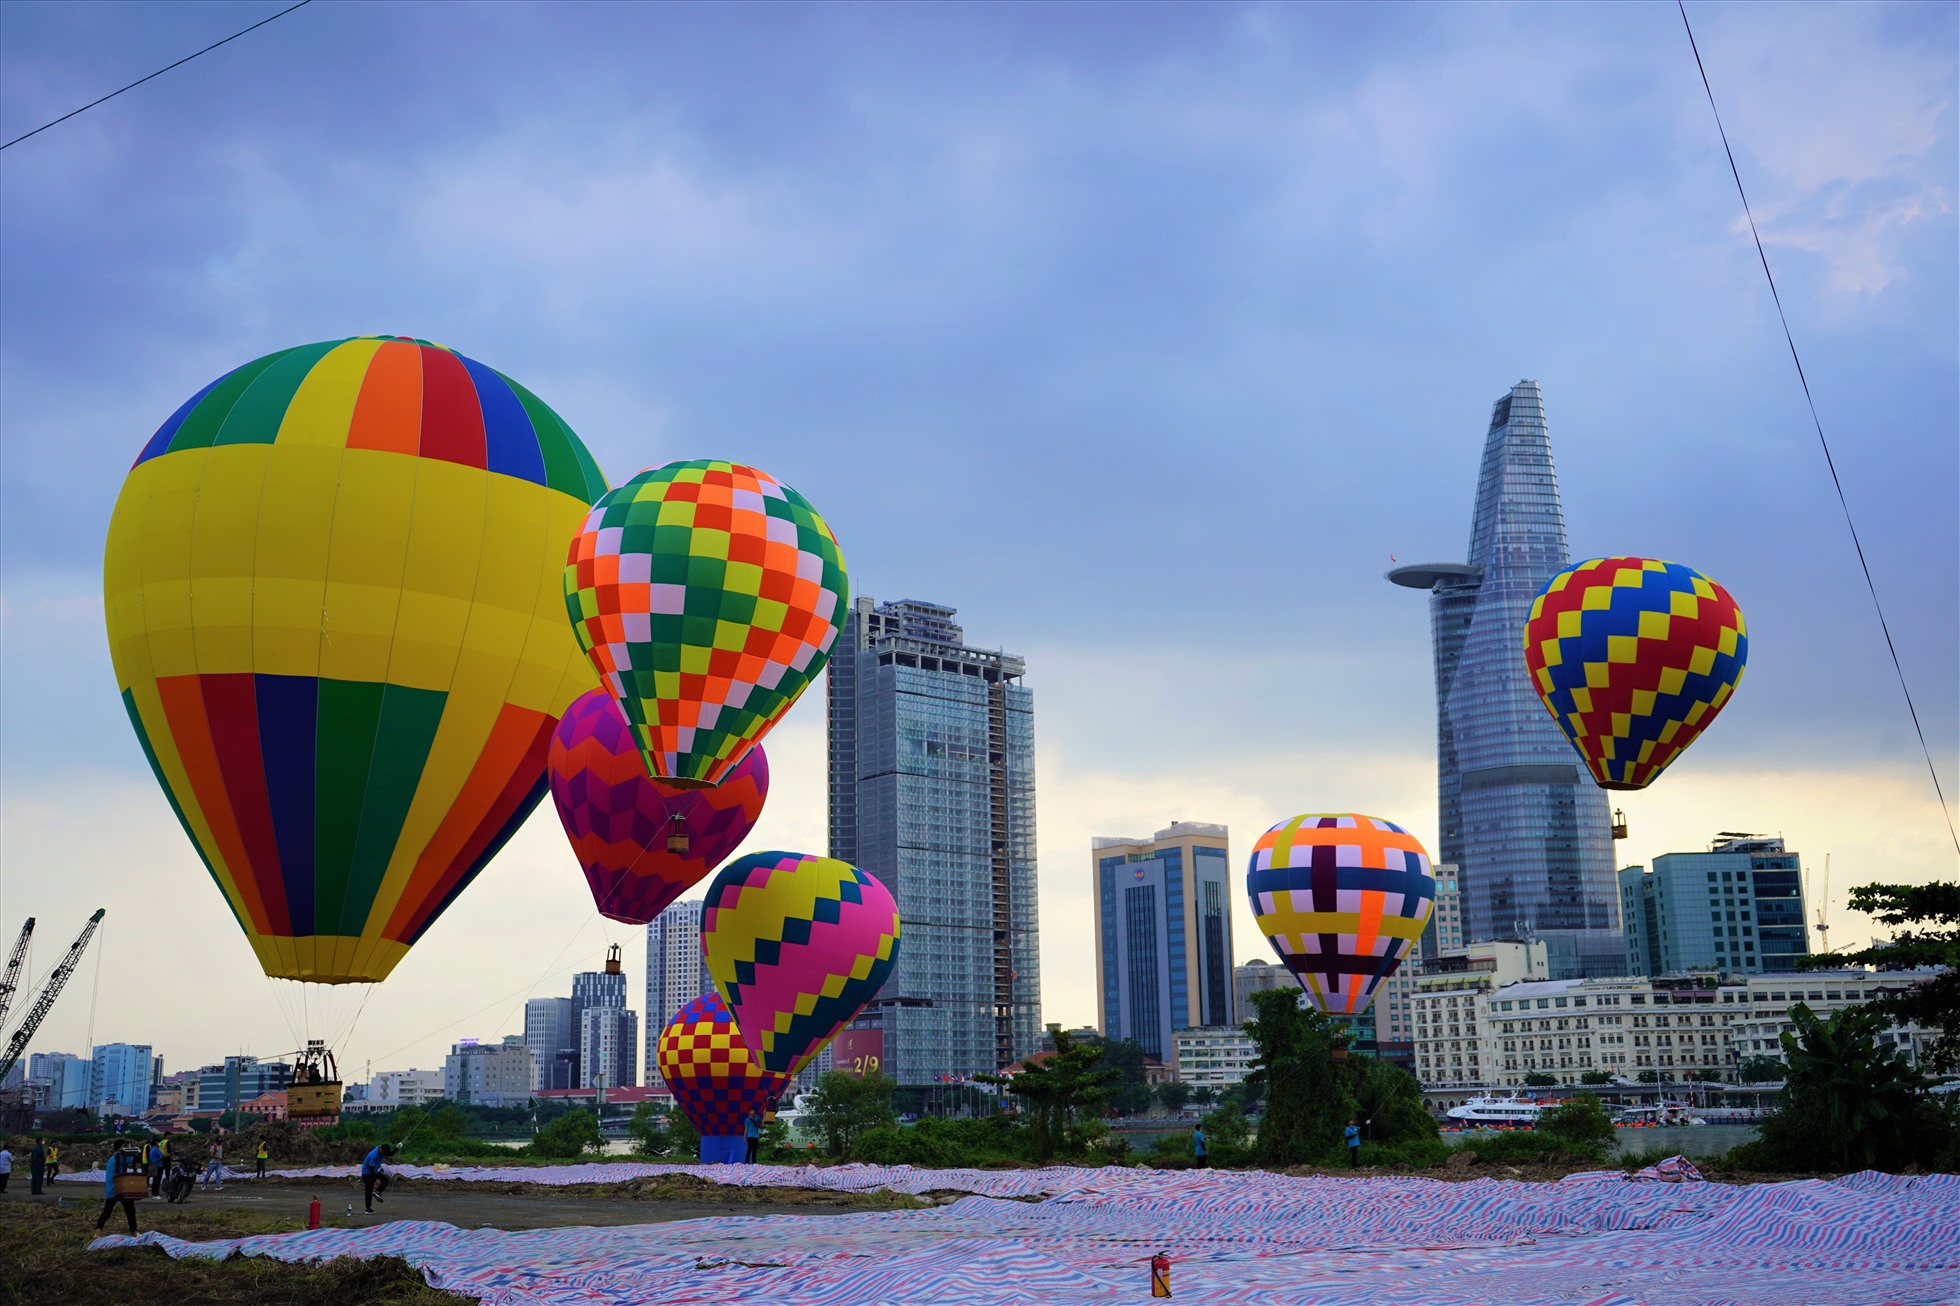 Khinh khí cầu: Hãy cùng chiêm ngưỡng khung cảnh đẹp như mơ của thành phố từ trên cao với khinh khí cầu đầy màu sắc. Sự lãng mạn và tuyệt đẹp của cảnh vật sẽ khiến bạn trầm trồ và thấy đời đầy thú vị.